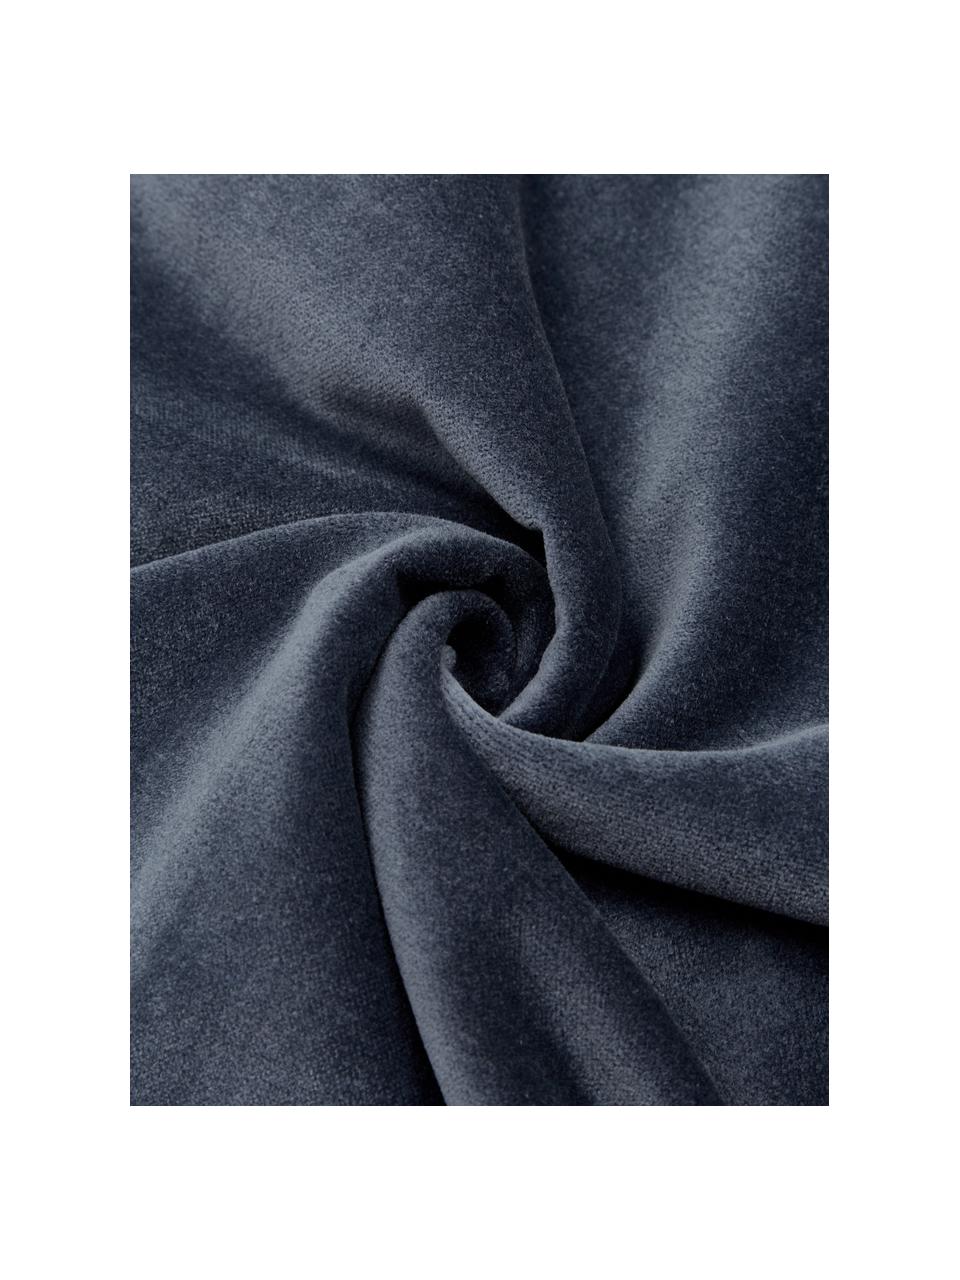 Samt-Kissen Pintuck in Blau mit erhabenem Strukturmuster, mit Inlett, Bezug: 55% Rayon, 45% Baumwolle, Webart: Samt, Blau, 45 x 45 cm